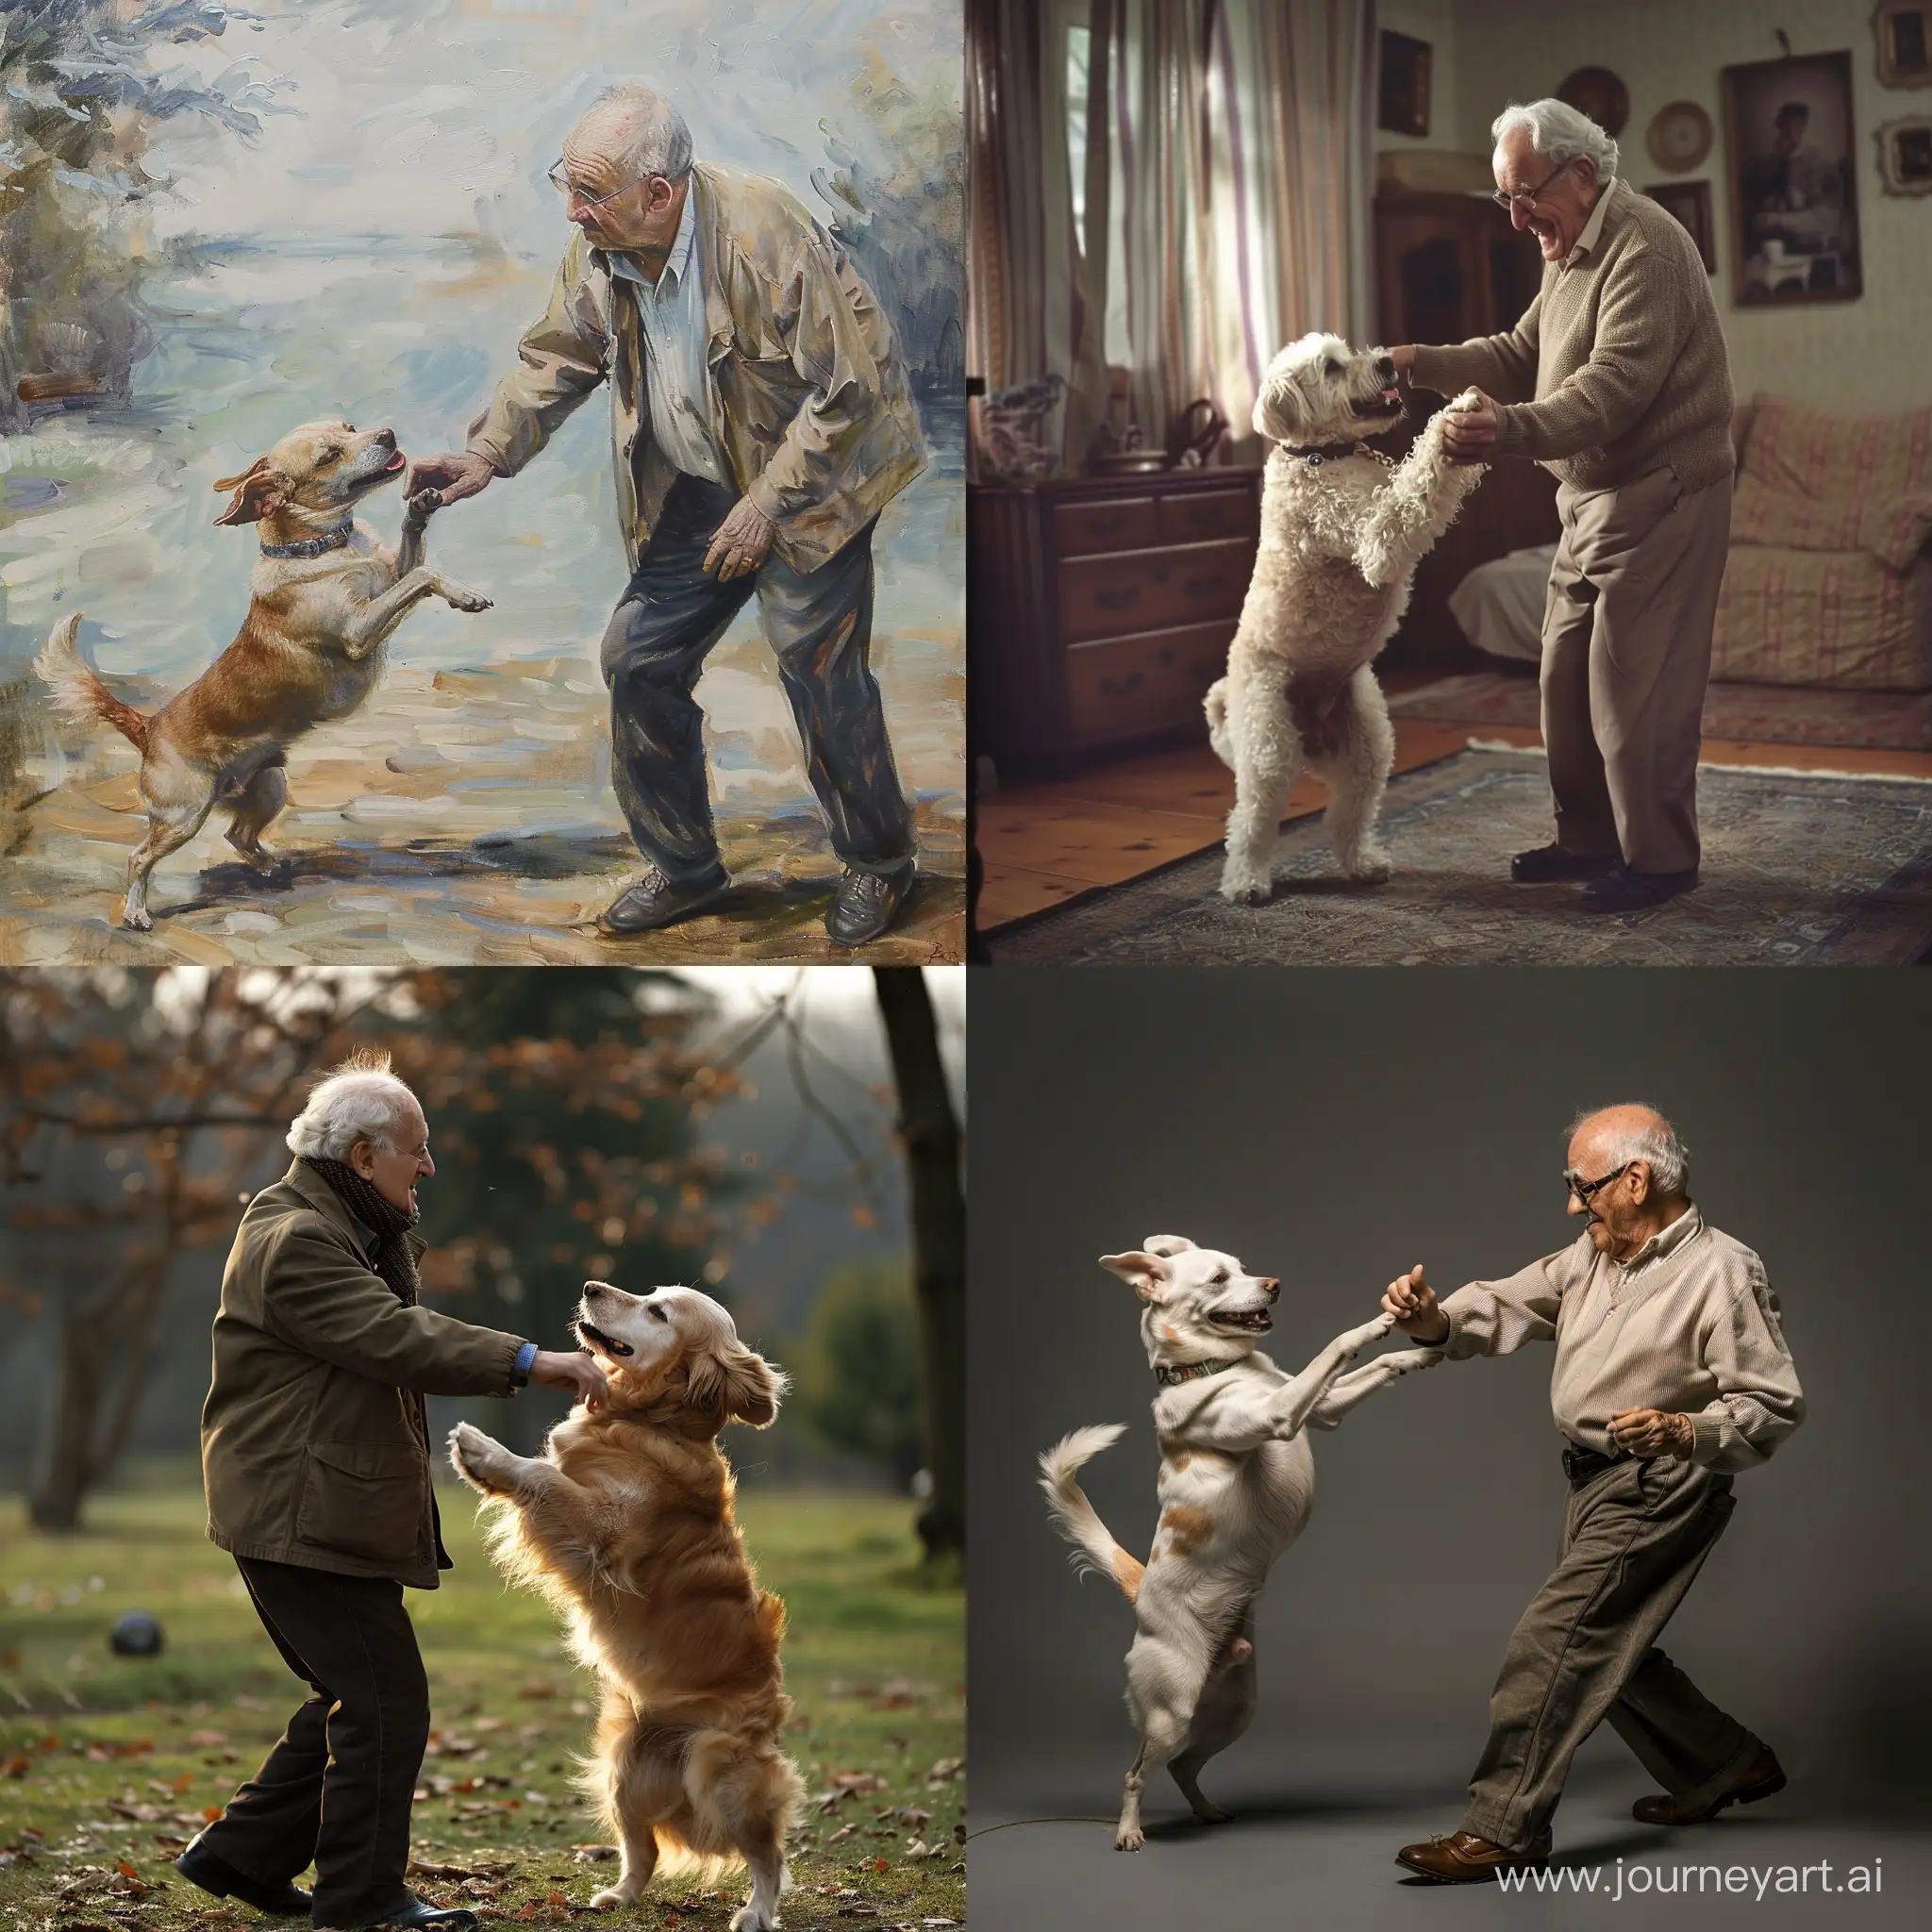 Joyful-Grandfather-and-Dog-Dancing-Moment